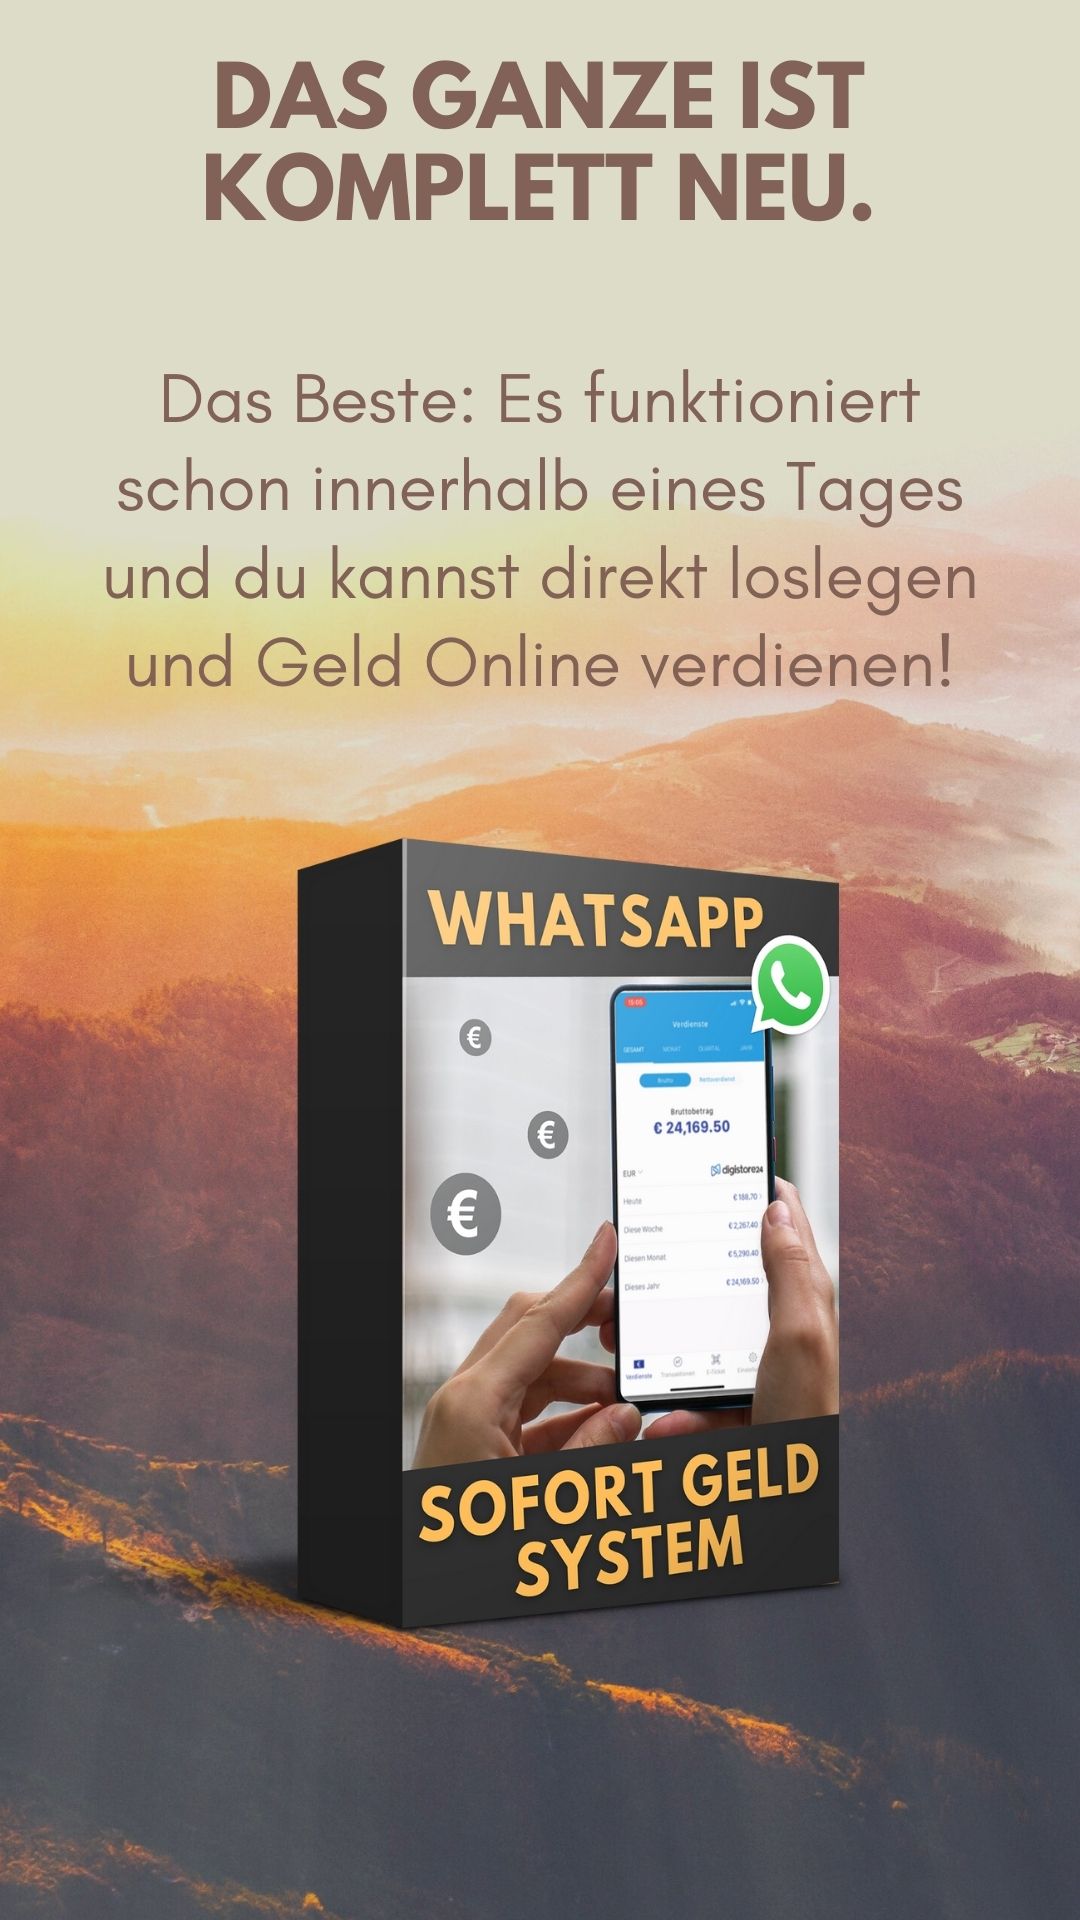 Whatsapp sofort Geld System Geld verdienen